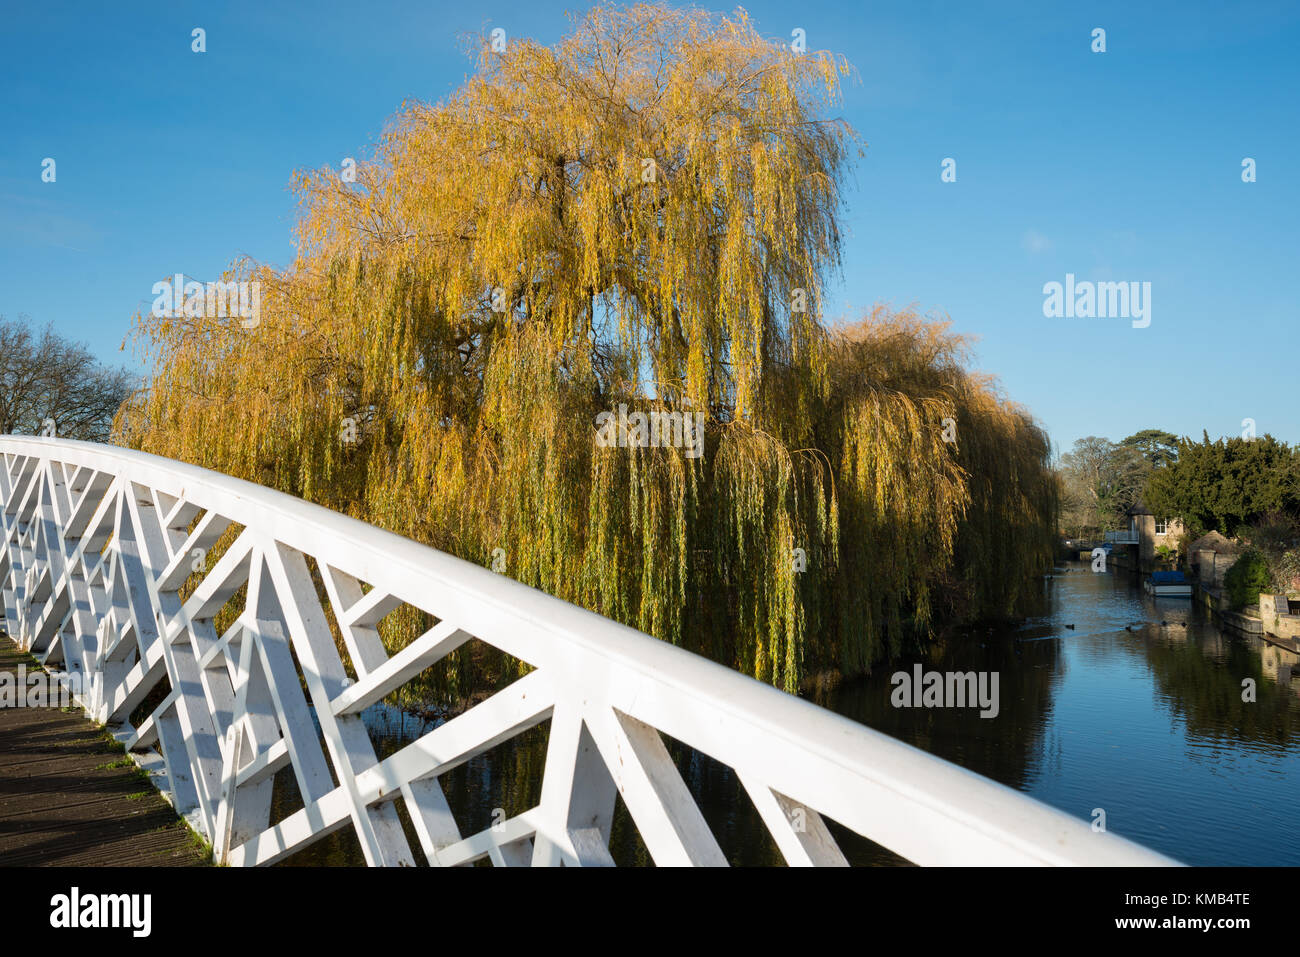 Il ponte cinese con salice piangente lungo le sponde del Fiume Great Ouse a Godmanchester, Cambridgeshire, Inghilterra, Regno Unito. Foto Stock